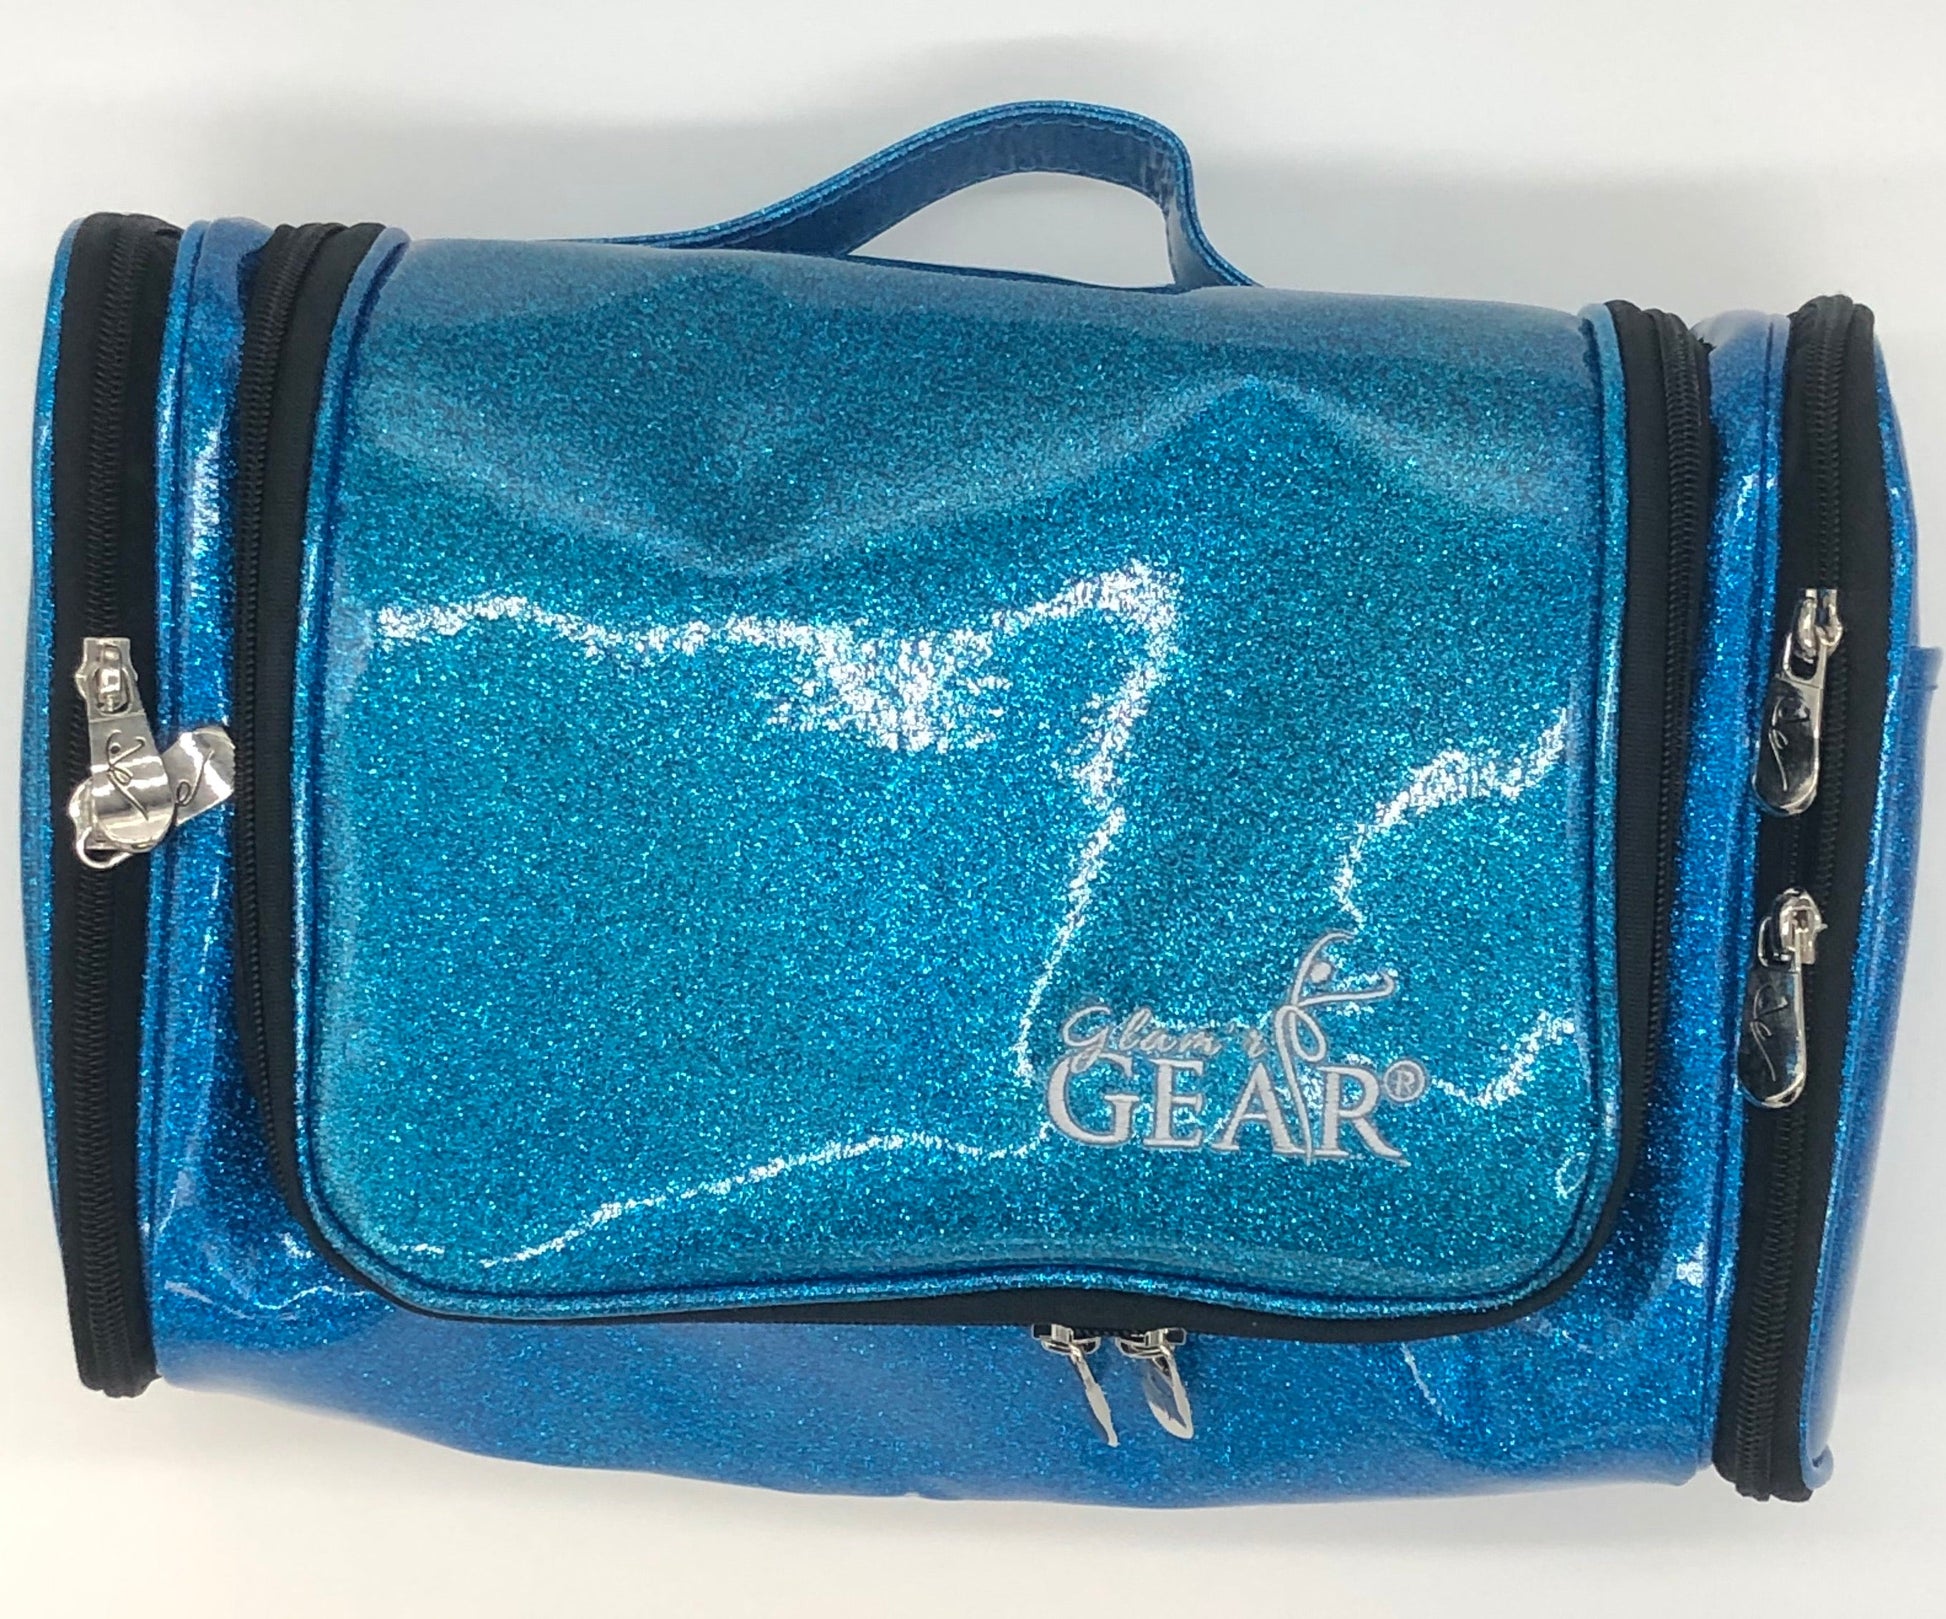 Glam'r Gear Hanging Travel Cosmetics Bag - Glam'r Gear